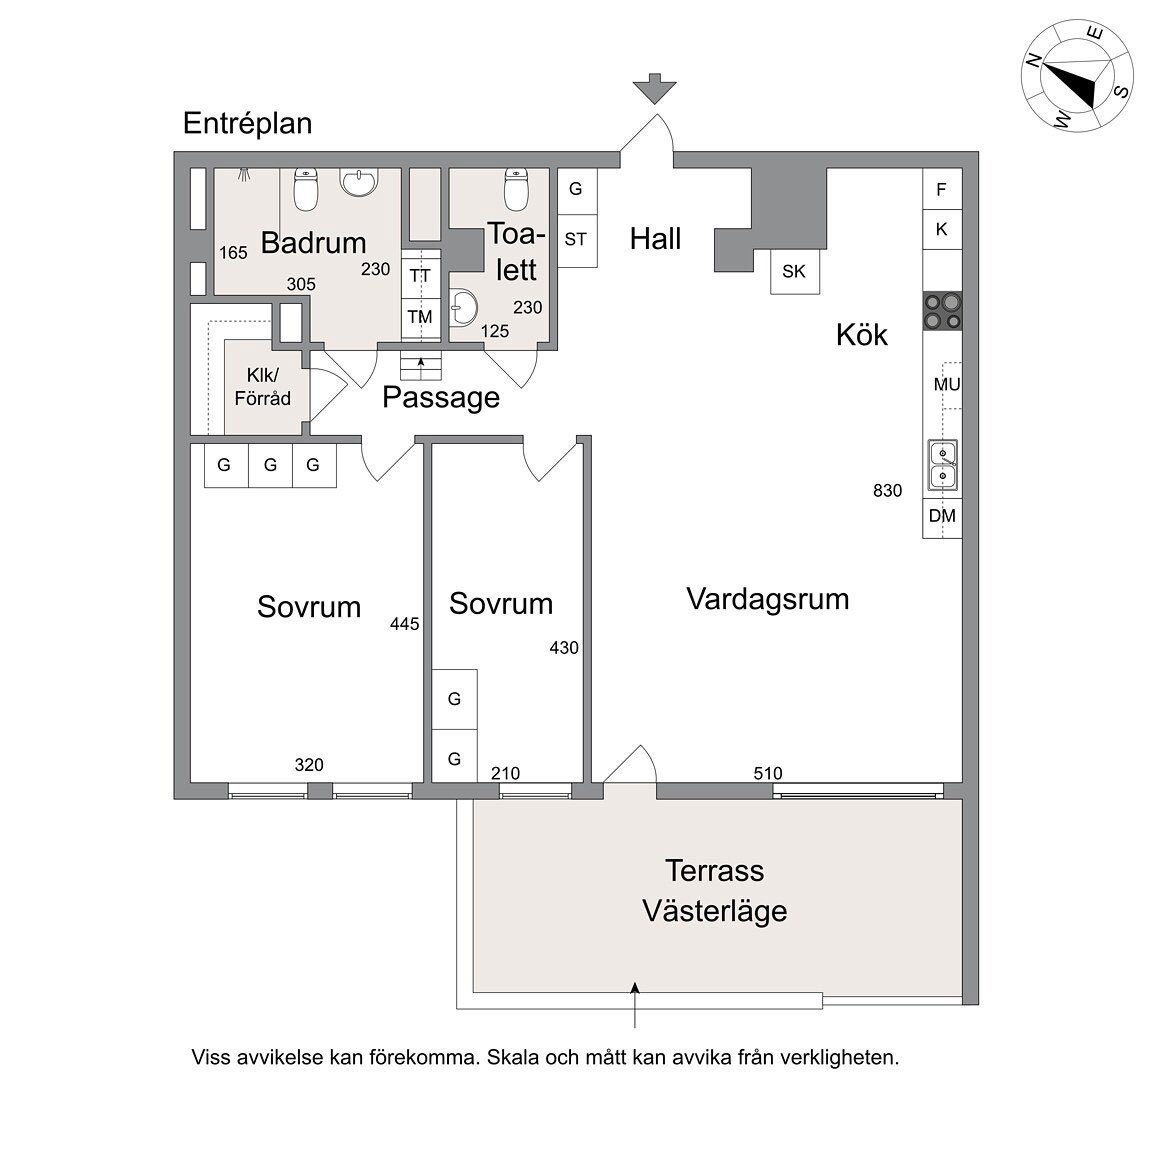 Скандинавский стиль с элементами американского лофта: квартира на первом этаже в Стокгольме